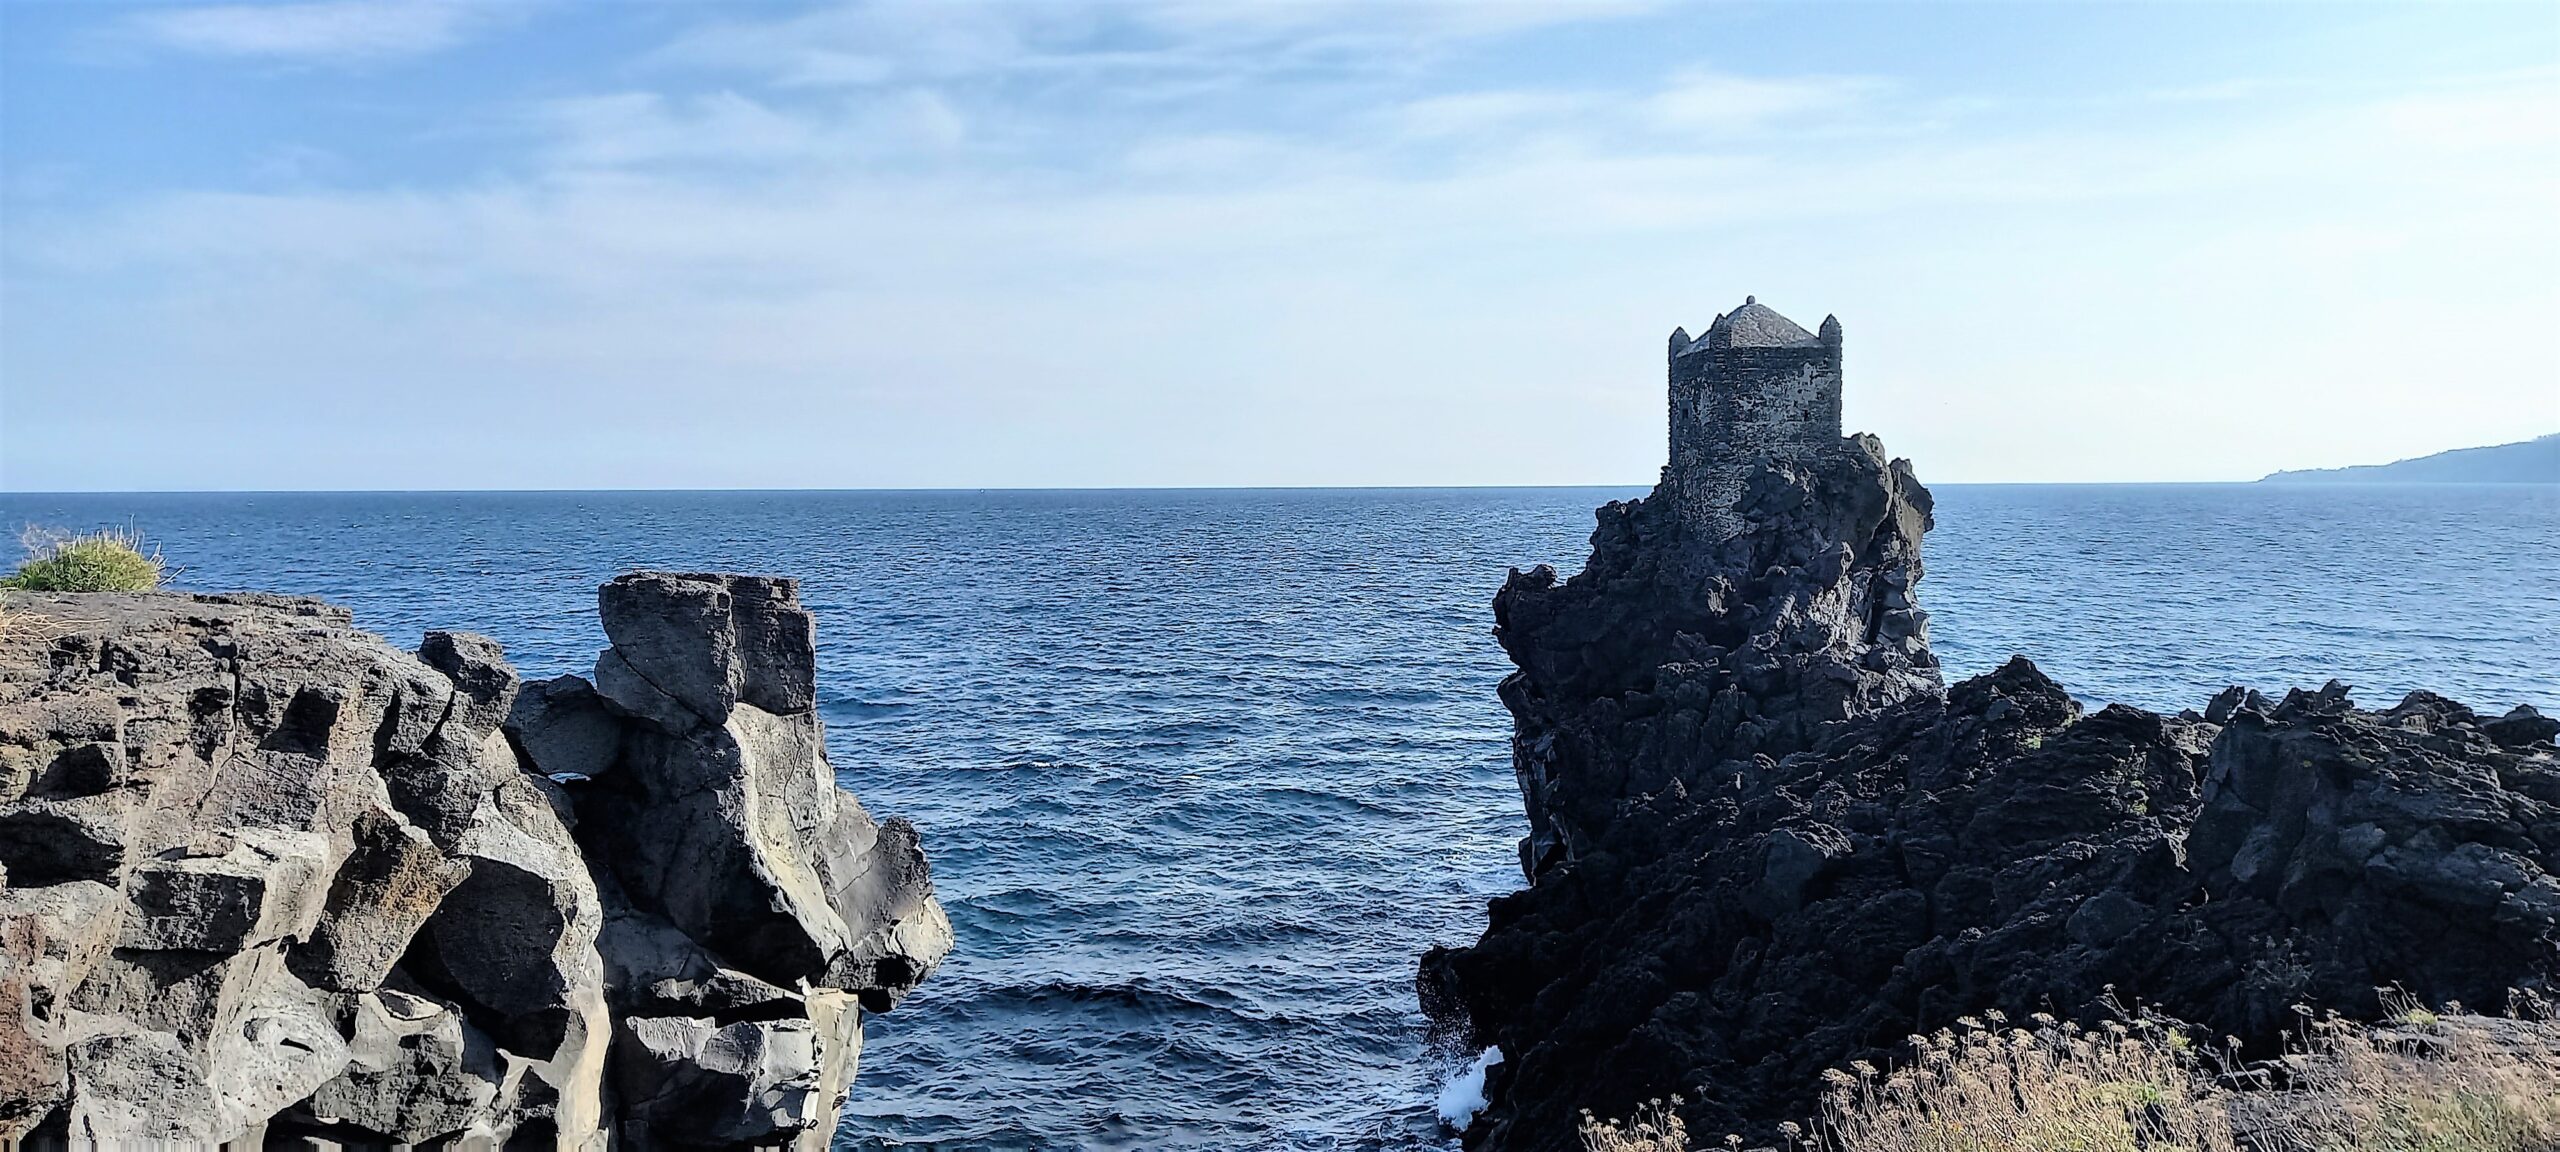 pietra lavica terra d'amare sicilia isola mediterranea sicily needs love vibrant world